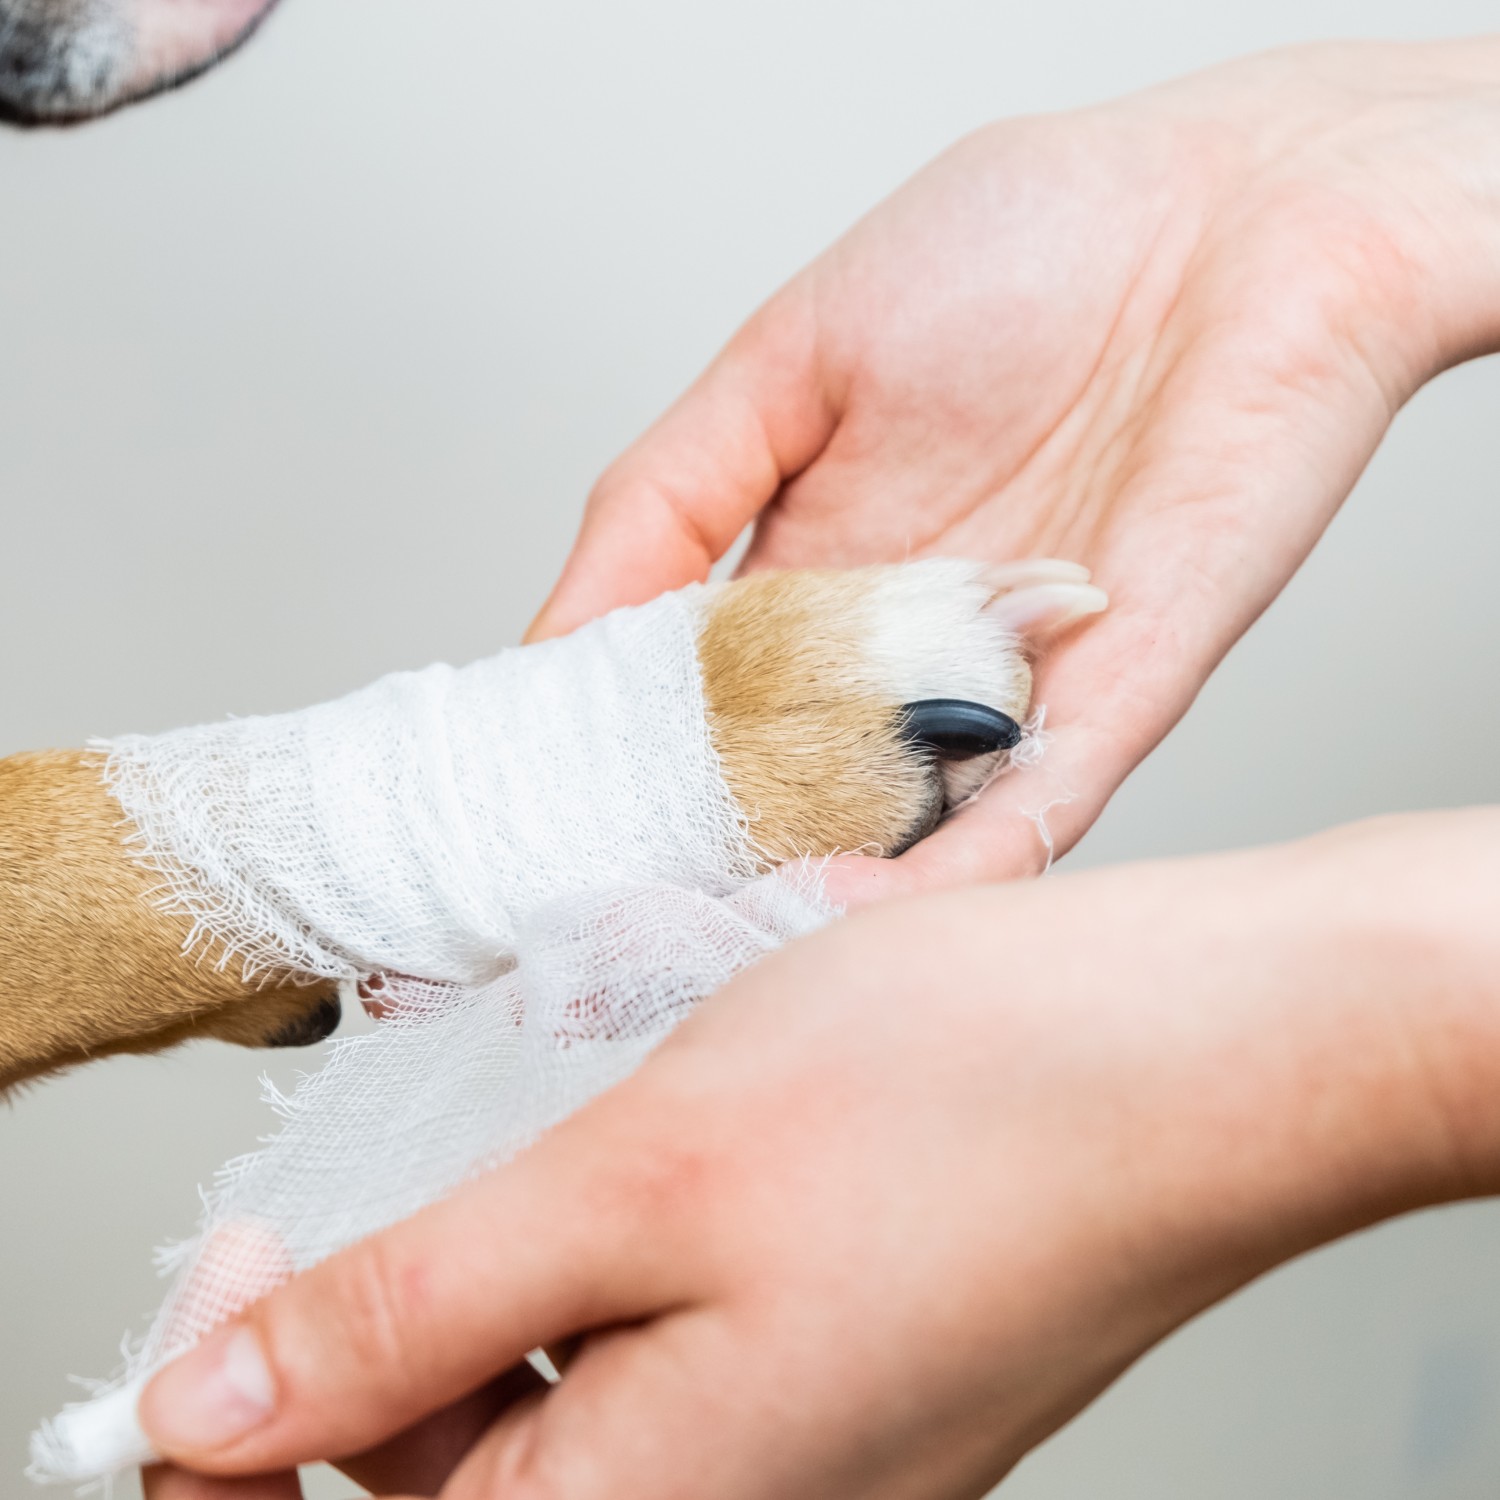 Emergency Services - Dog getting paw bandaged